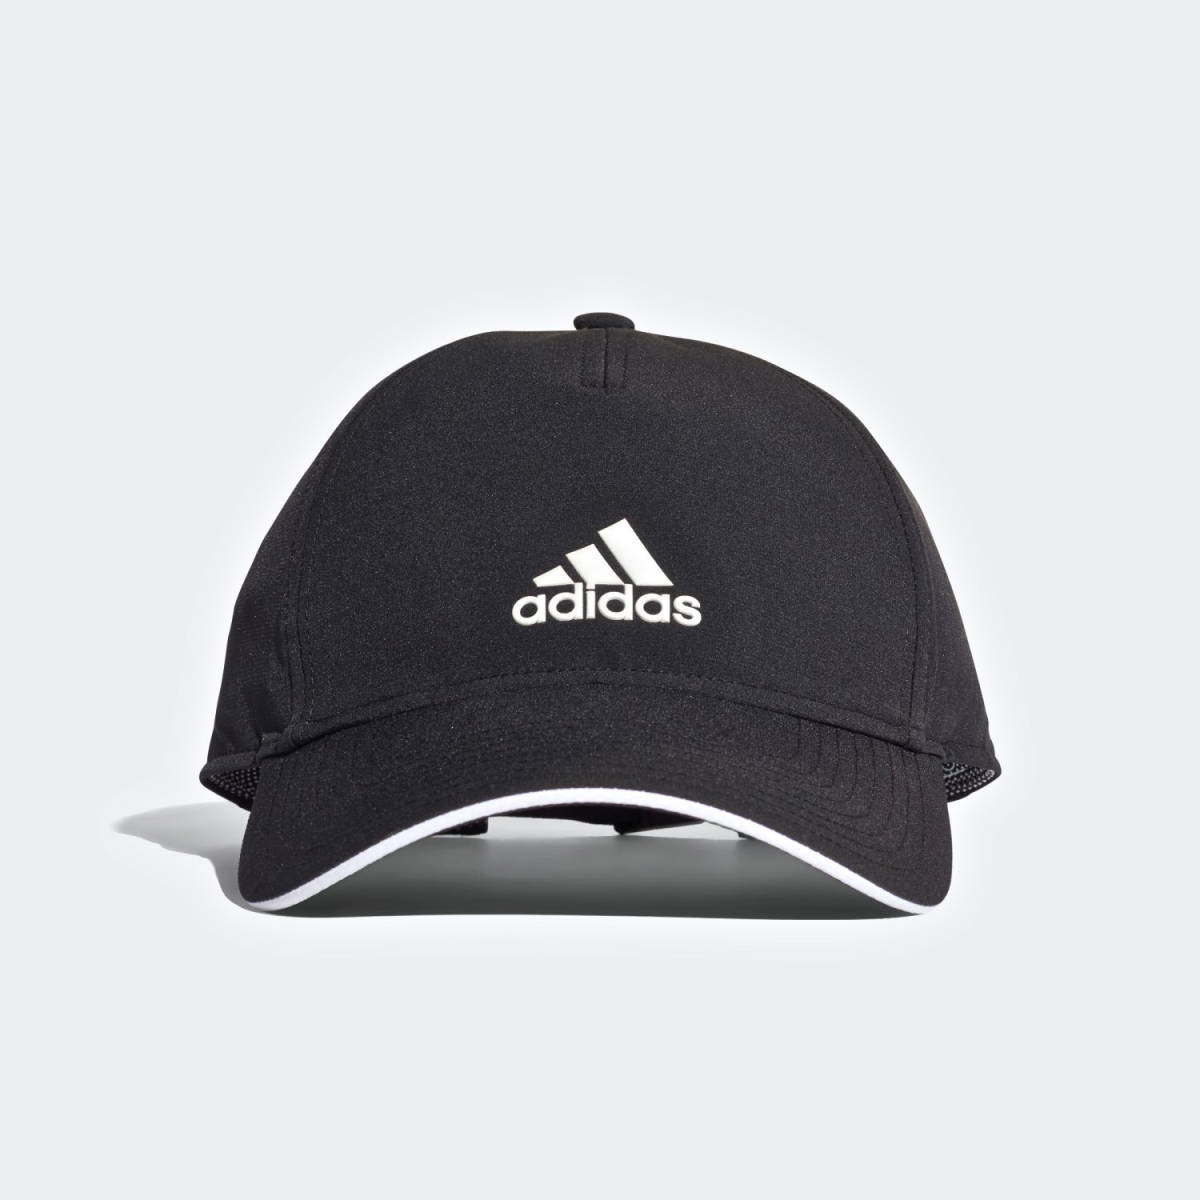 [ новый товар ] Adidas klaima свет колпак [81: чёрный ] 57cm~60cm adidas CAP 3шт.@la Индия lai высокофункциональный jo серебристый g тренировка Golf 